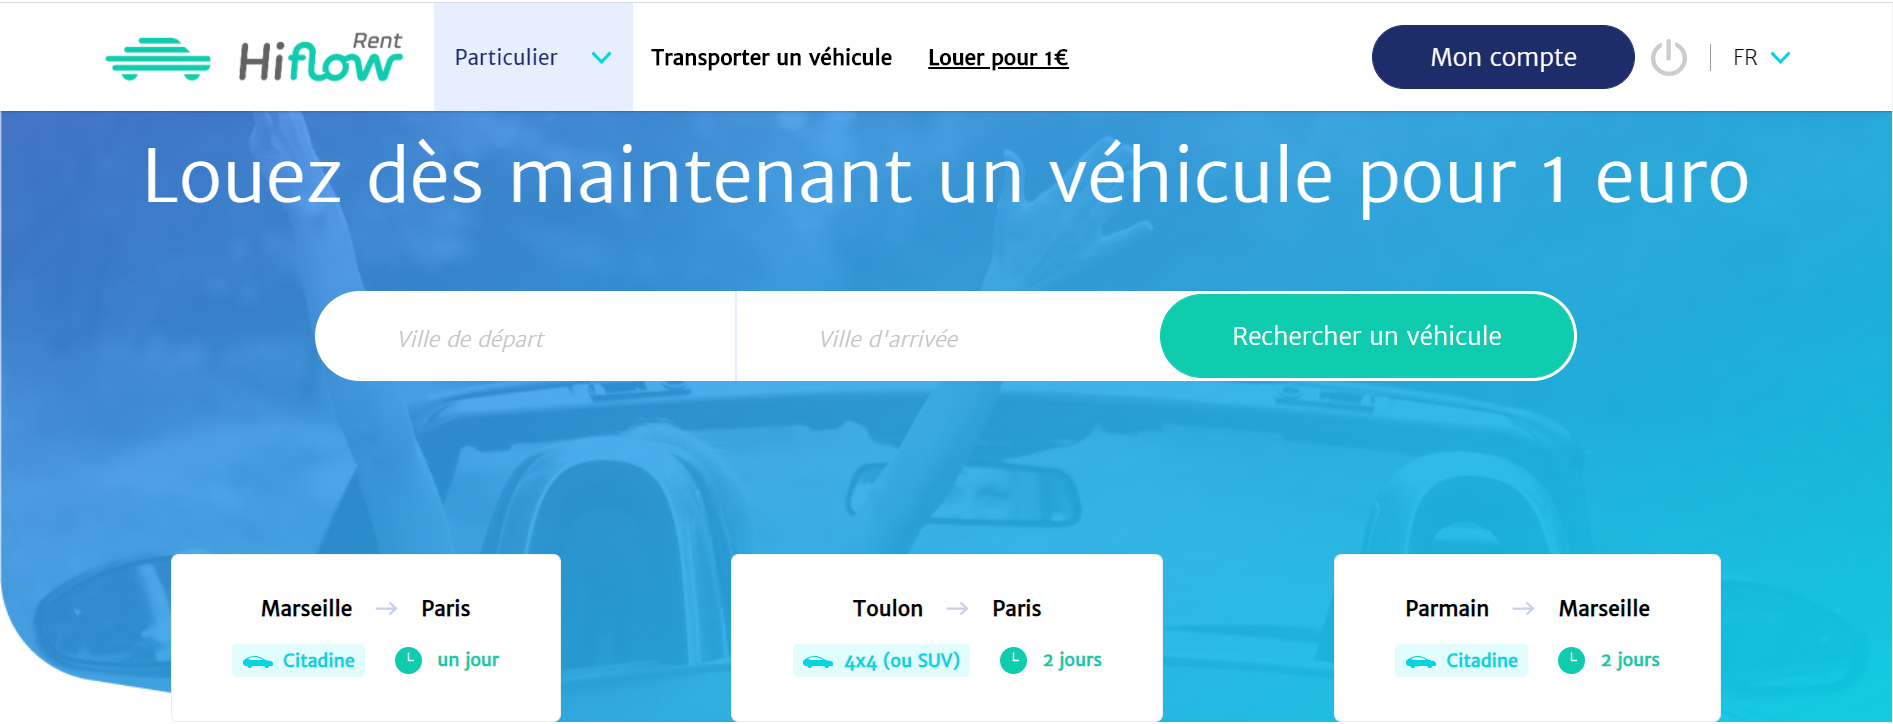 Hiflow Rent, la location de véhicules à 1 euro